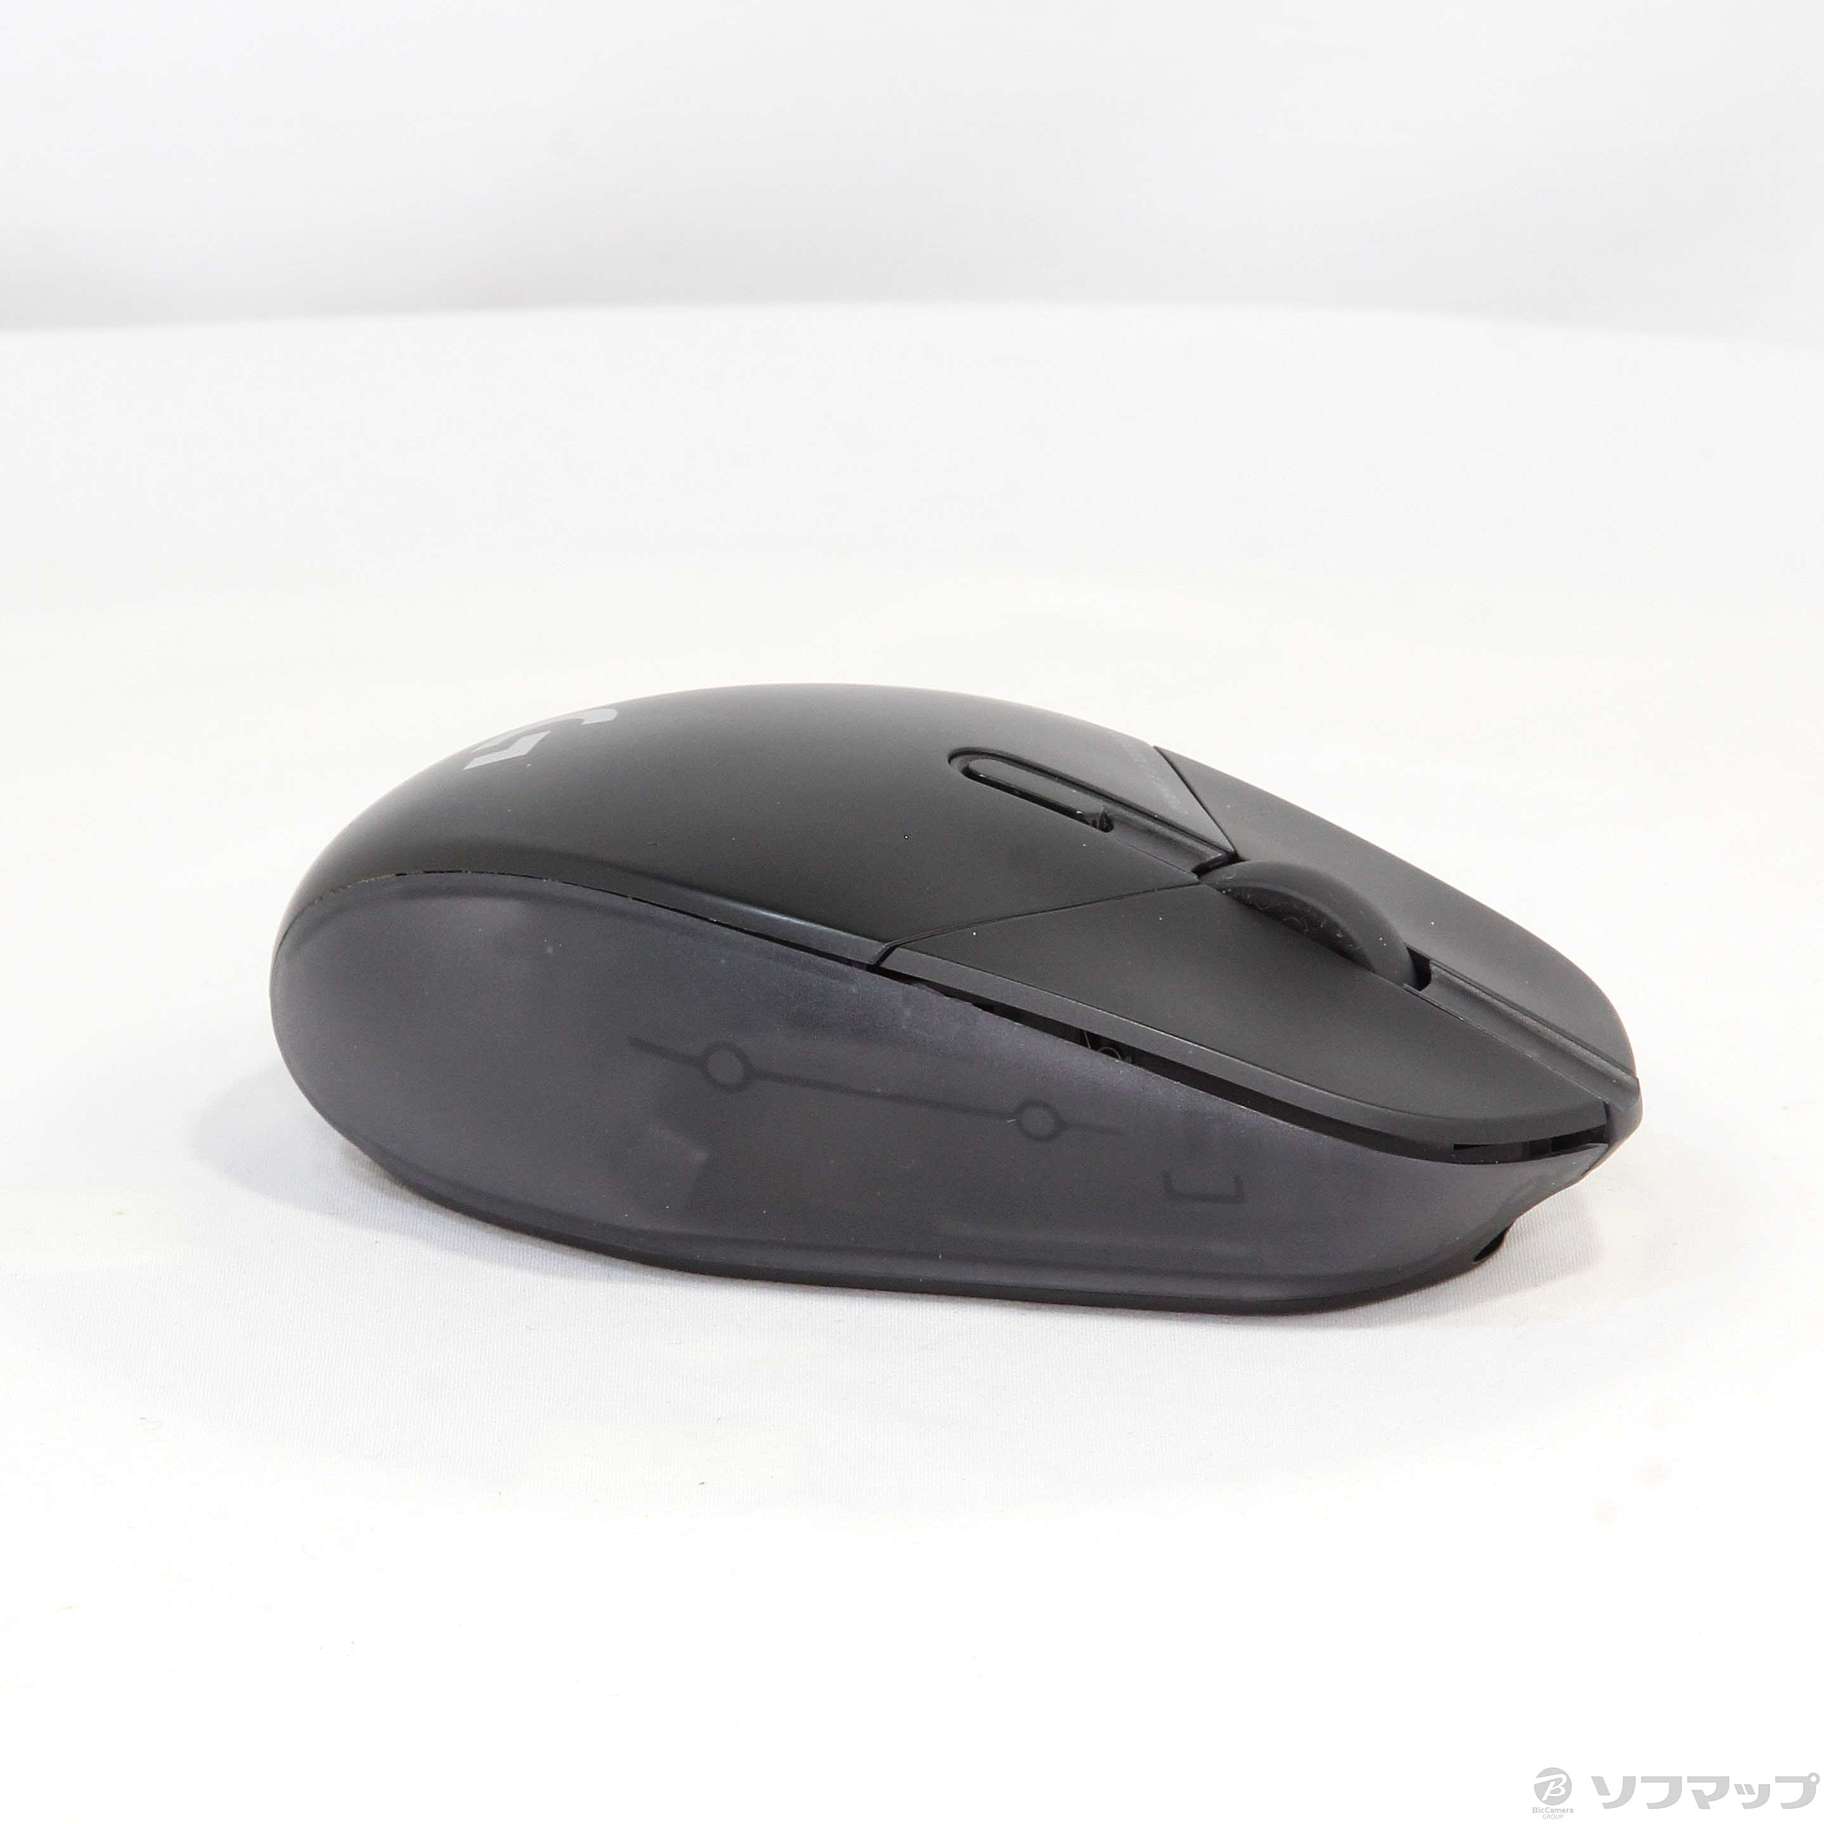 G303 SHROUD ロジクール エディション ワイヤレス ゲーミングマウス